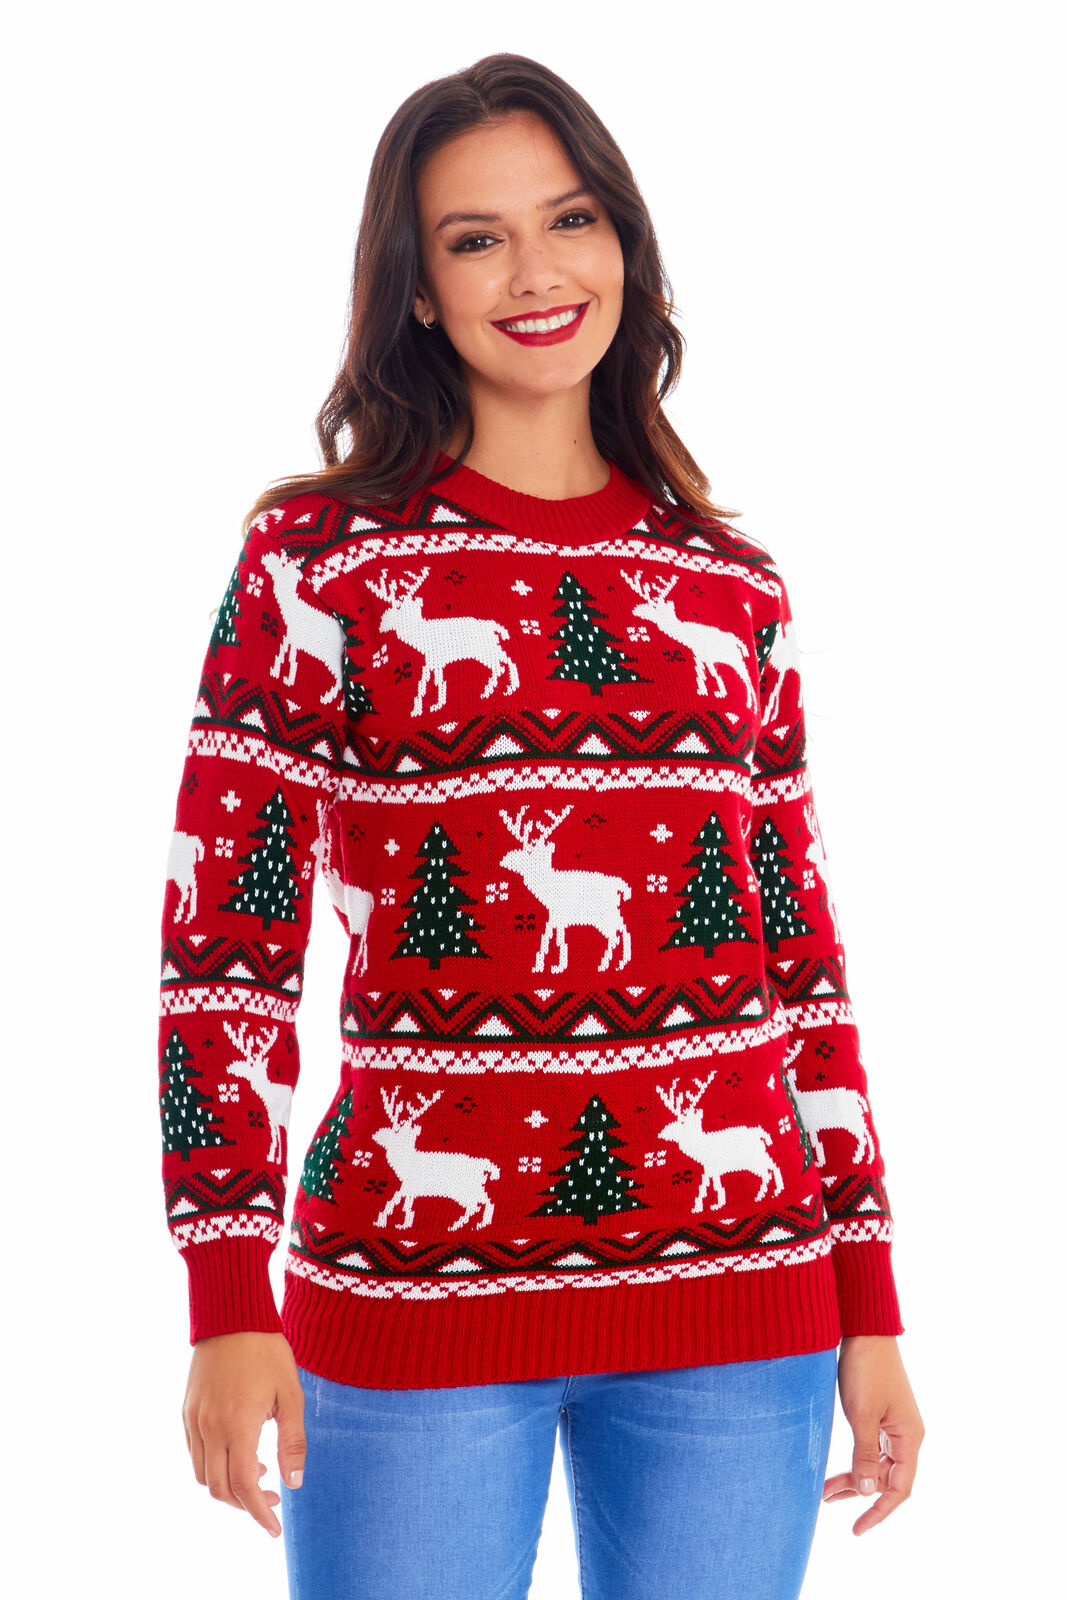 Vánoční svetr - design pro celou rodinu